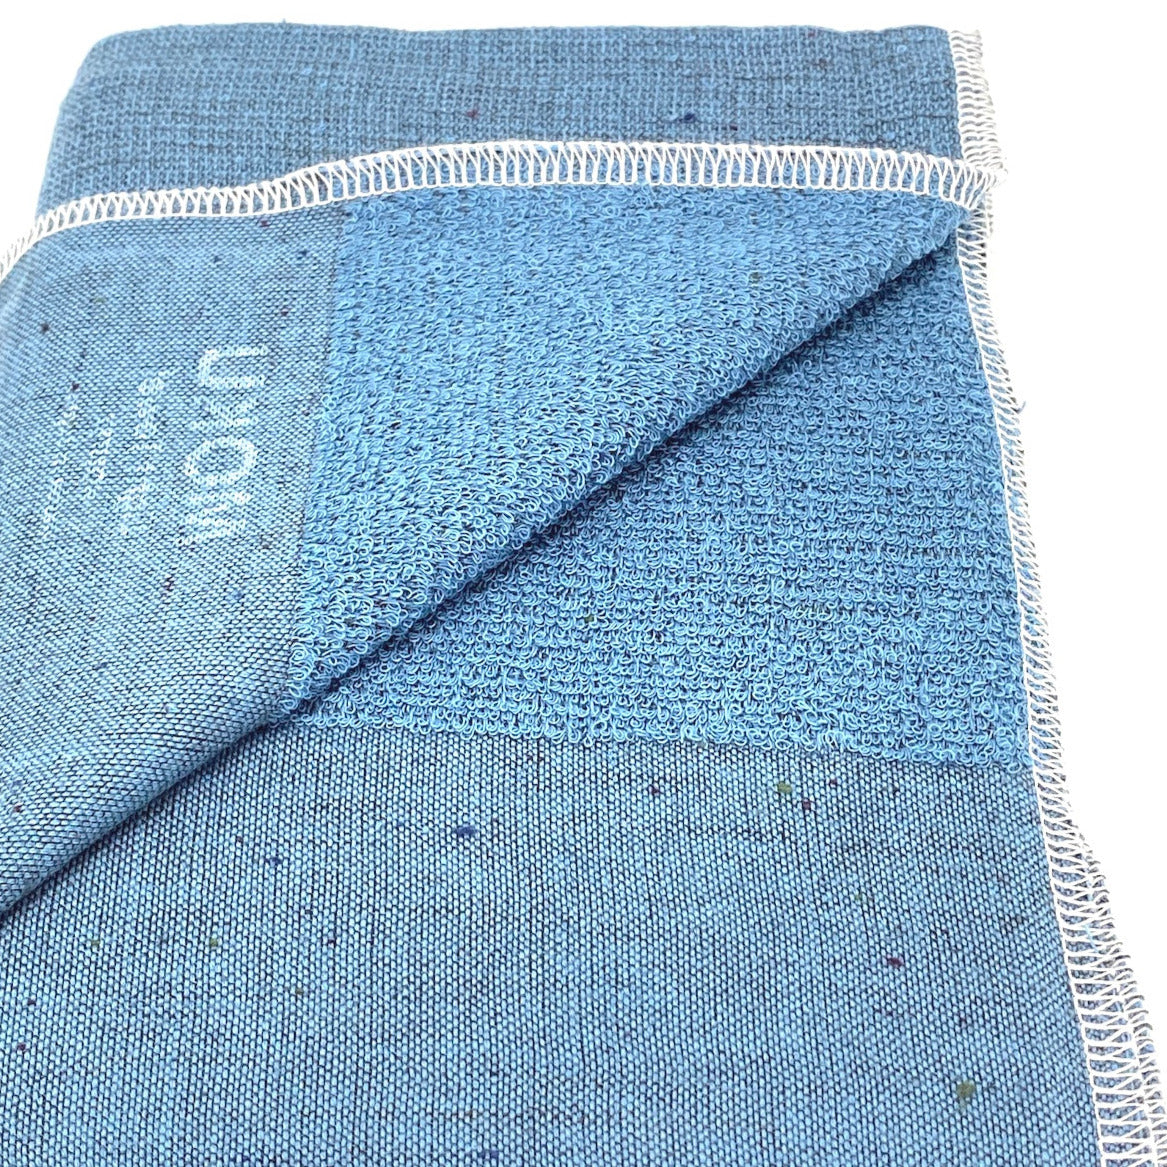 Moku M | Baumwoll-Handtuch von Kontex | 33 x 100cm | Made in Japan